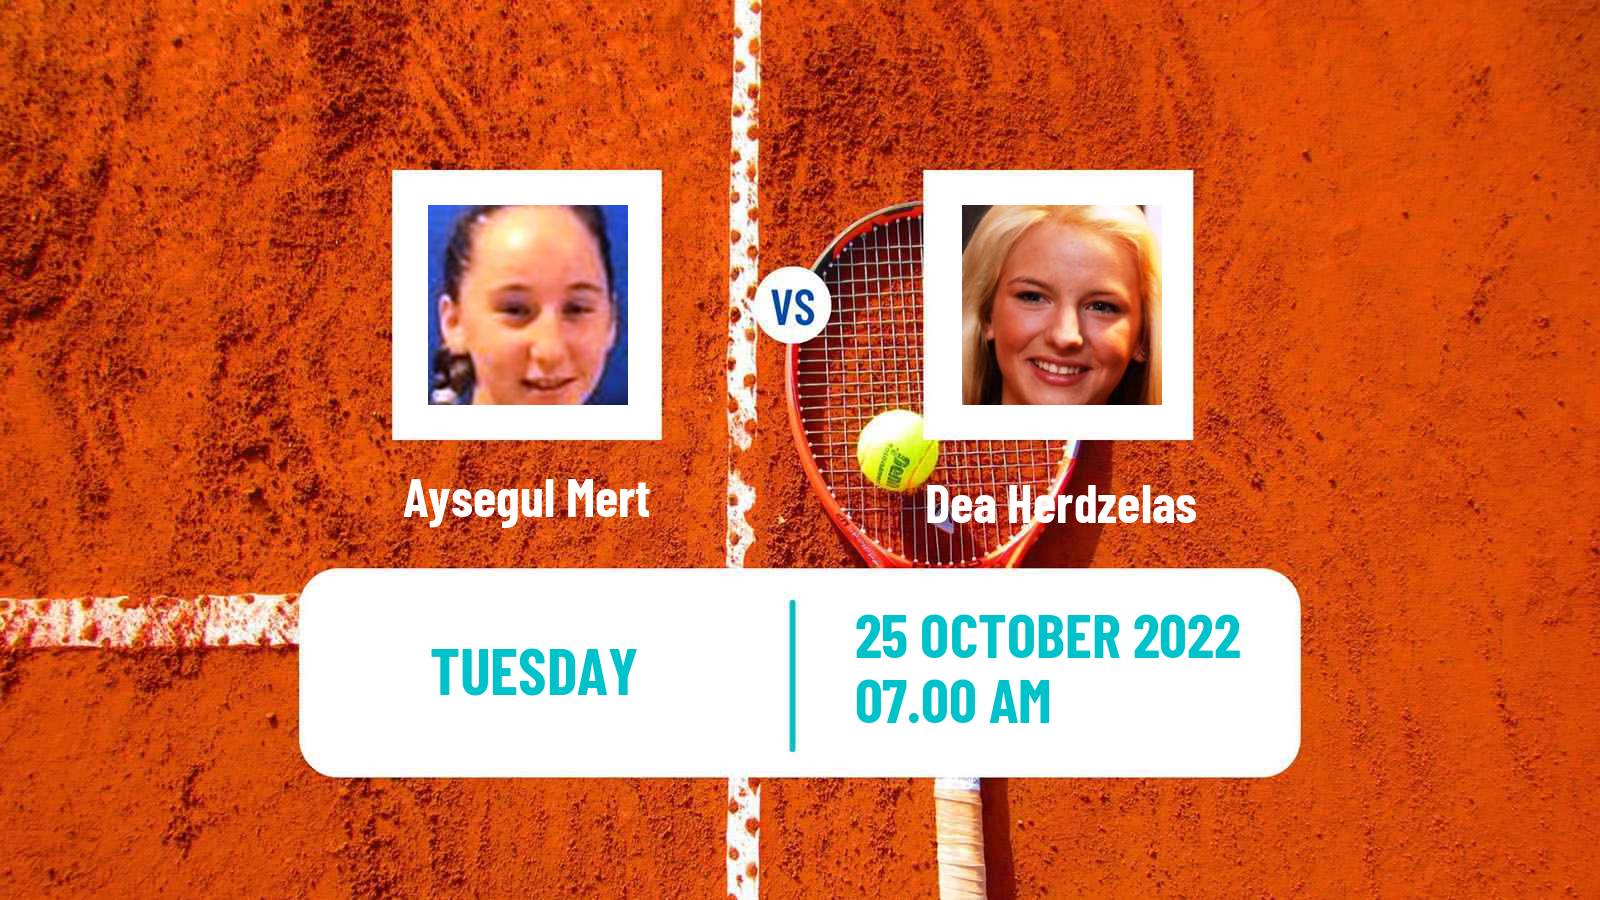 Tennis ITF Tournaments Aysegul Mert - Dea Herdzelas